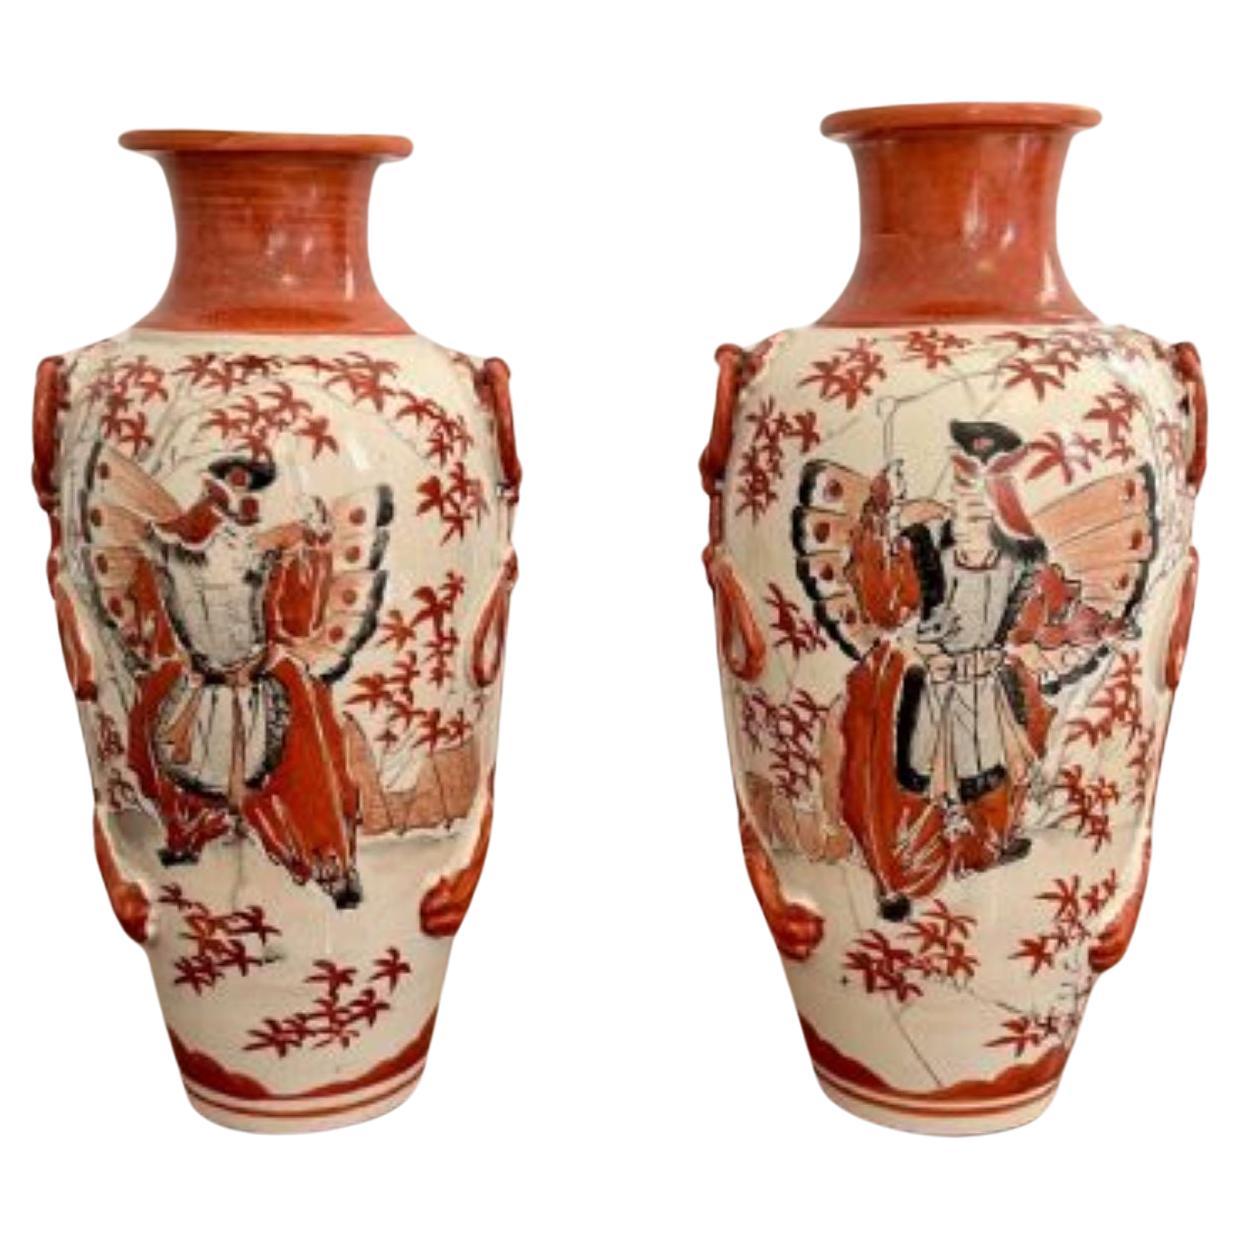 How do I date a Satsuma vase?